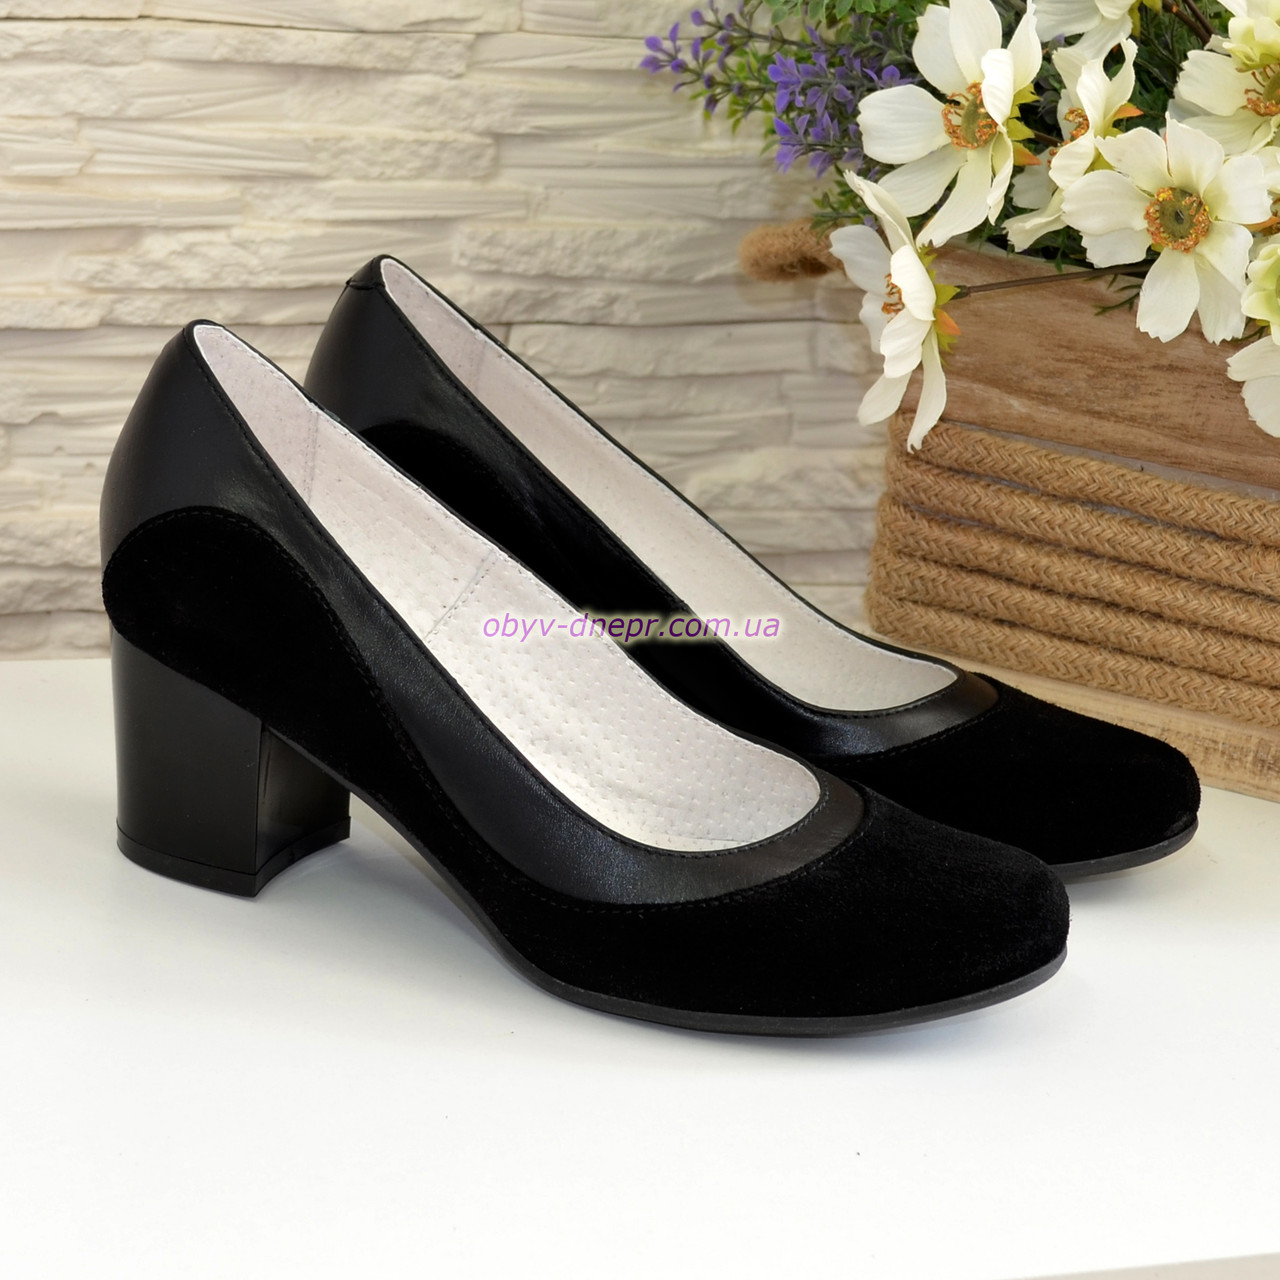 Жіночі класичні туфлі на невисокому стійкому каблуці, натуральні замша та шкіра